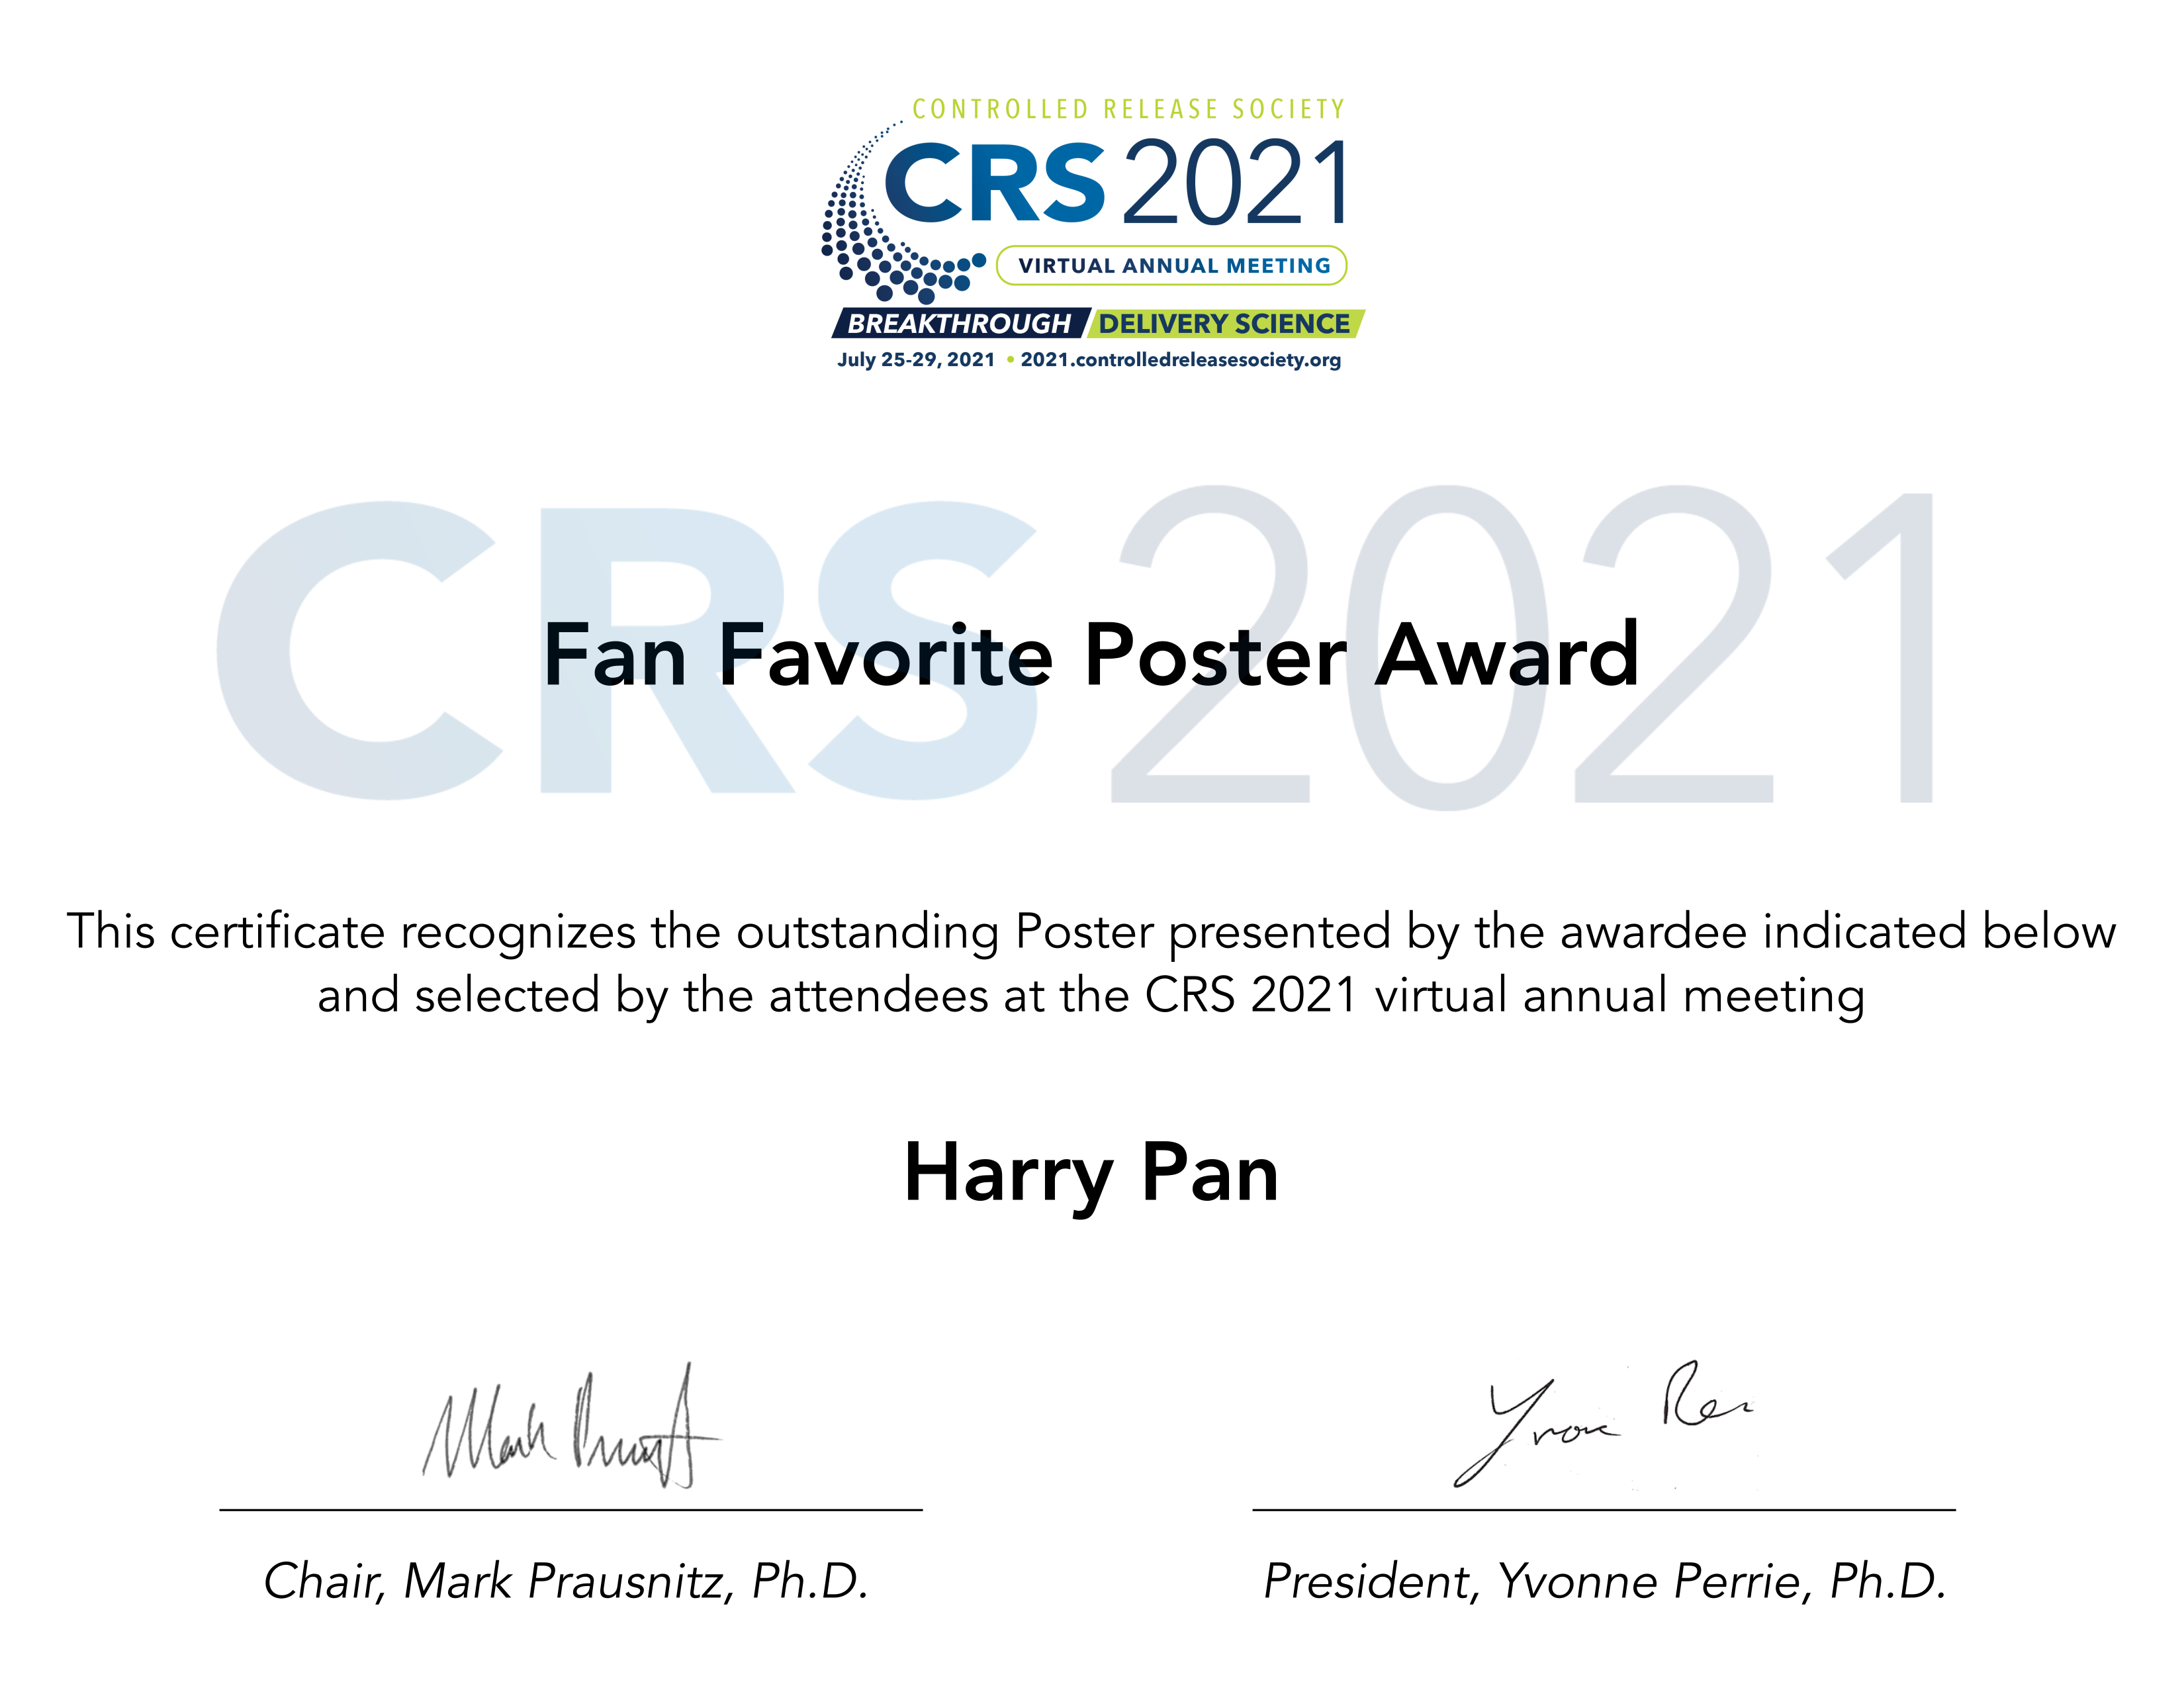 Harry PAN Award